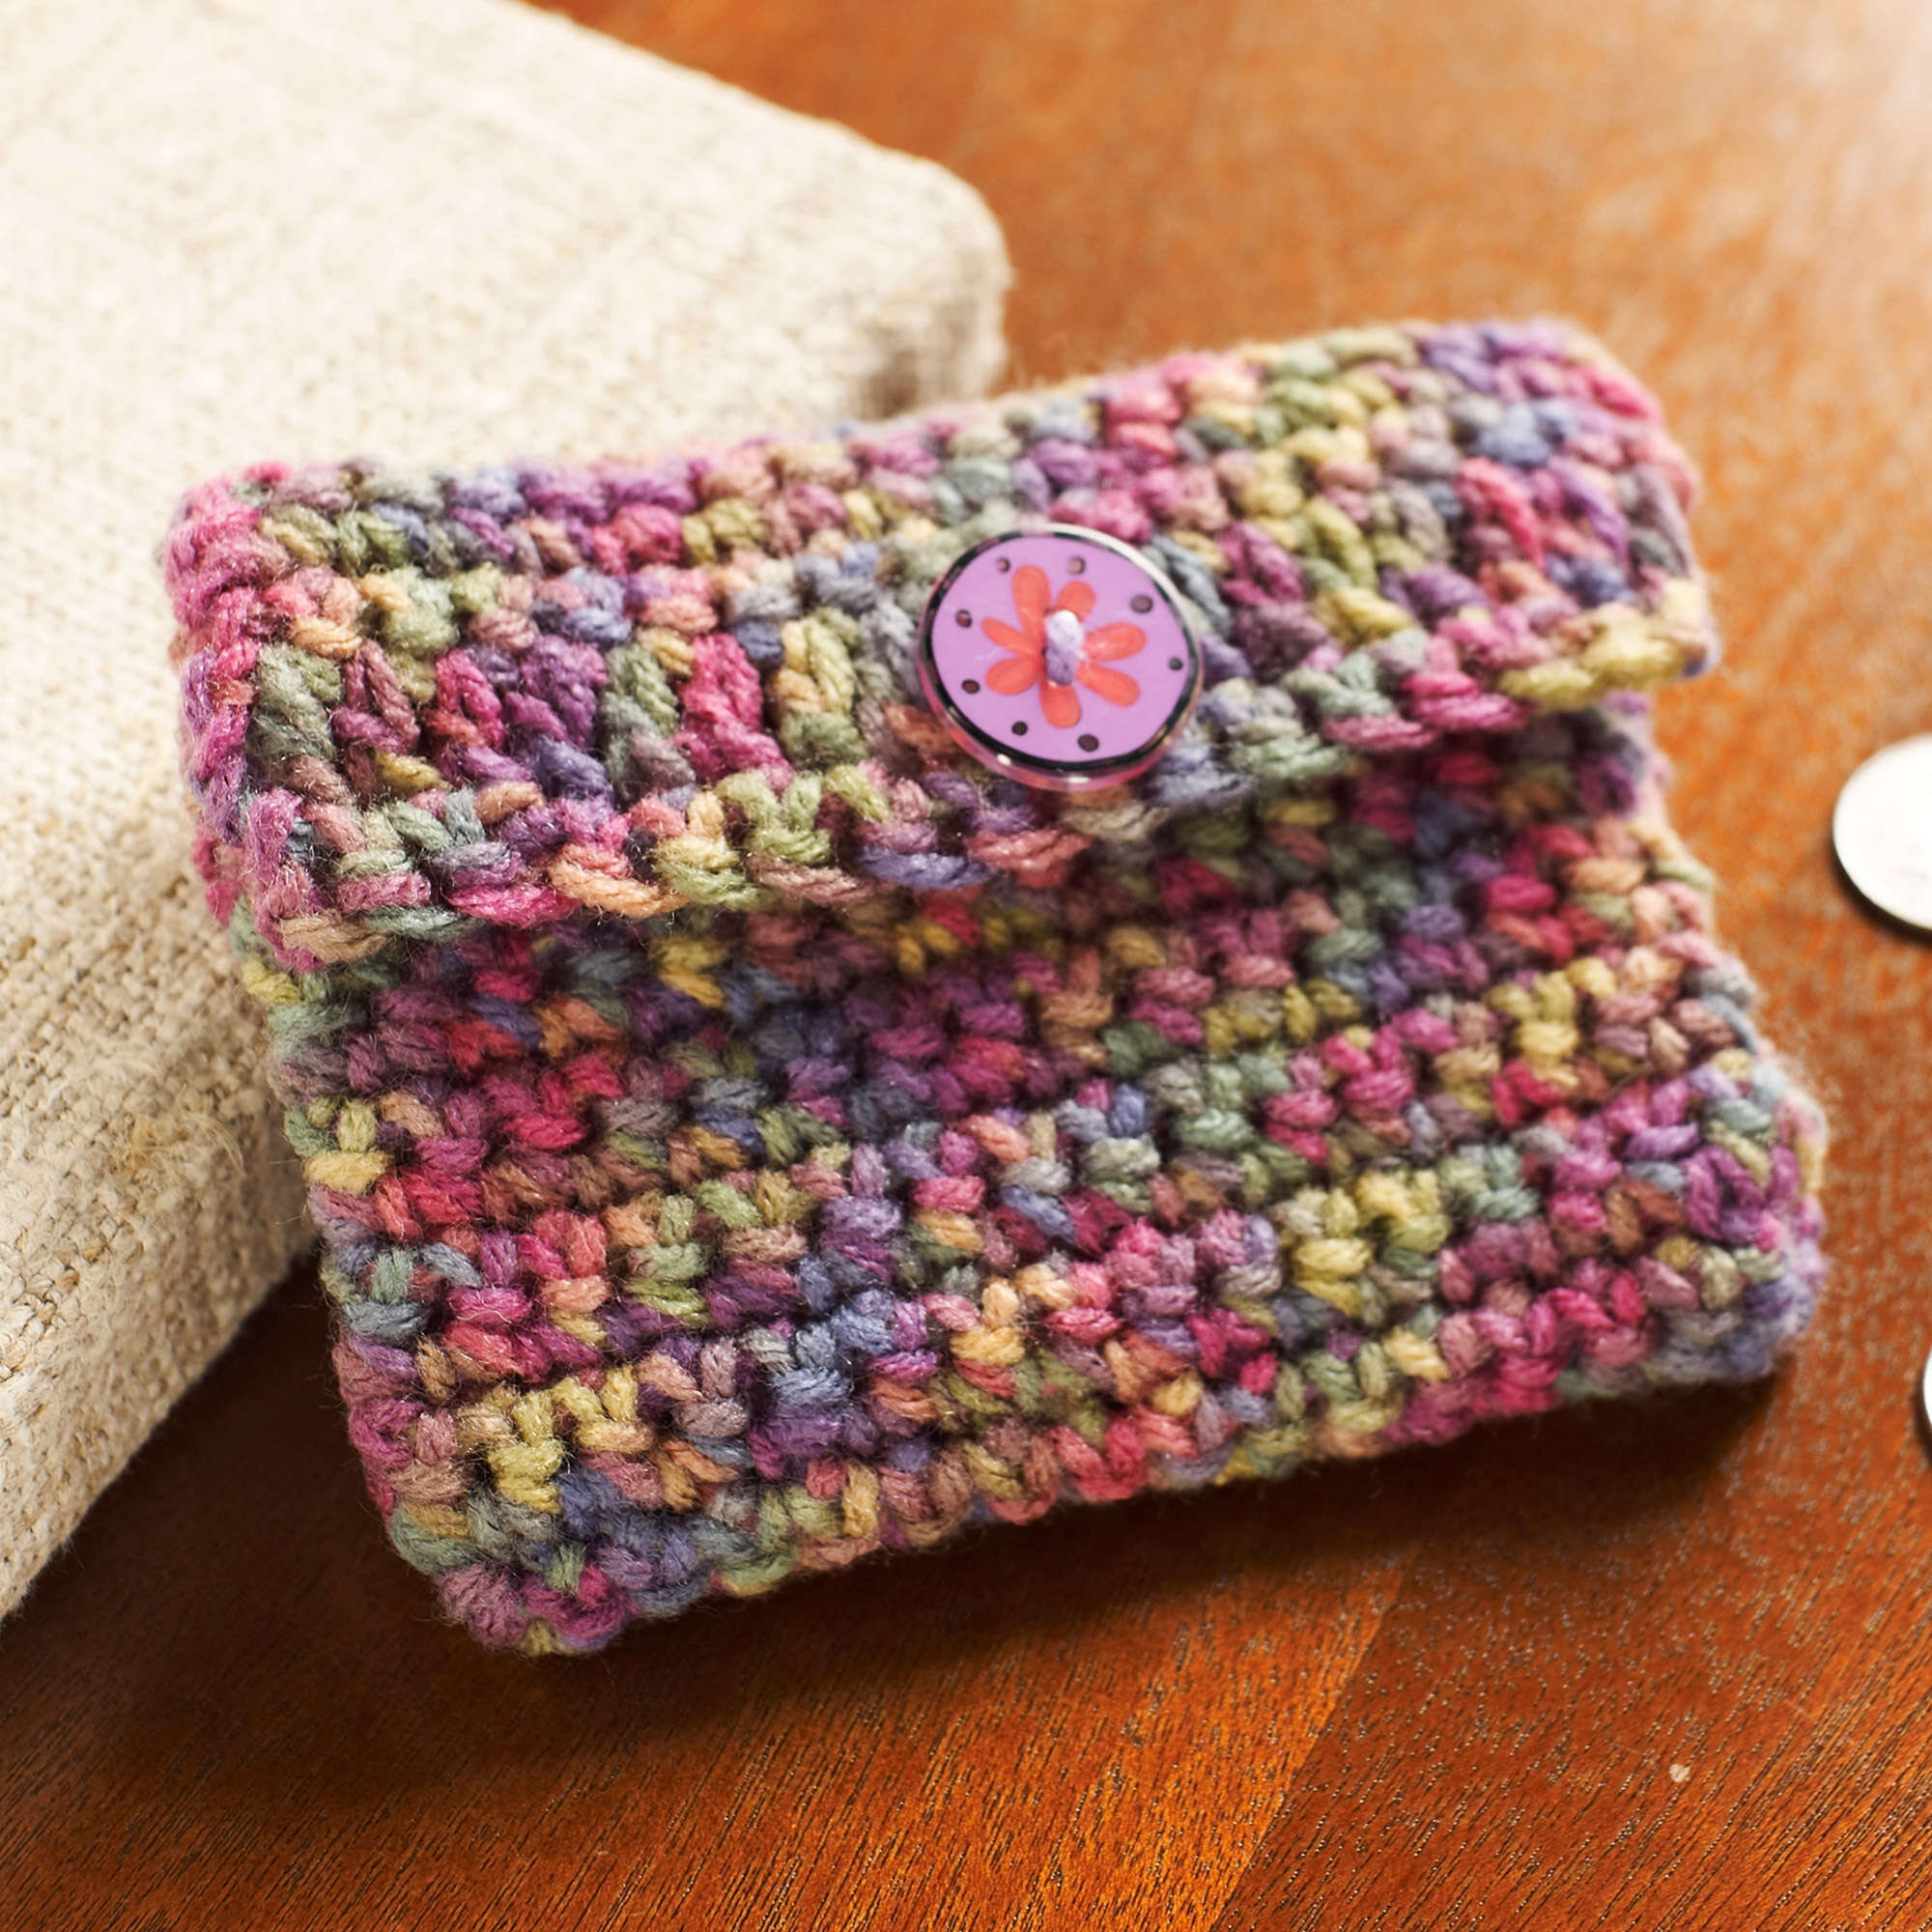 Crochet Watermelon Slice Zipper Purse – Pattern & Lining Tutorial